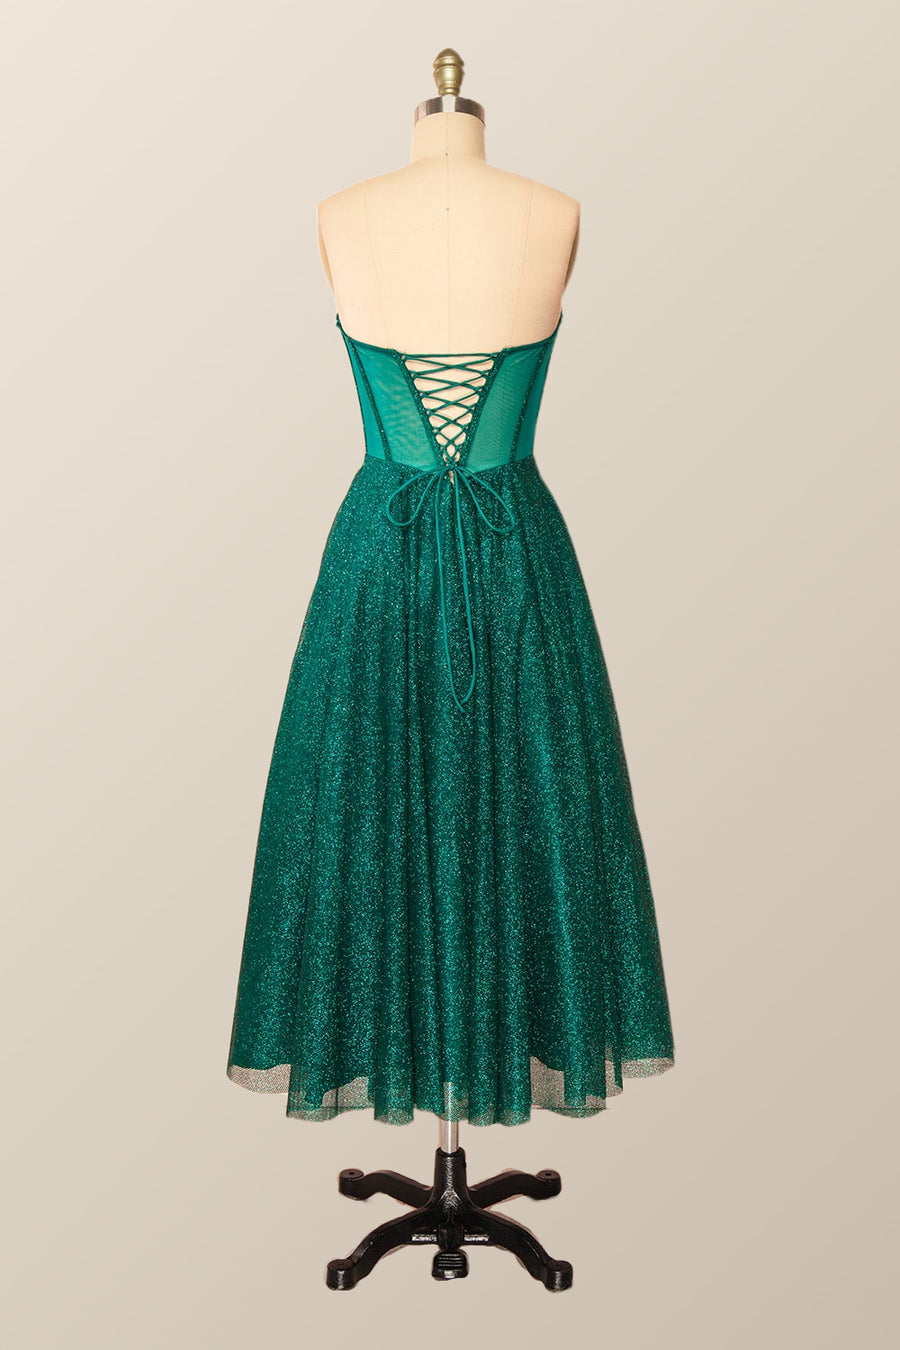 Green Corset A-line Tea Length Dress